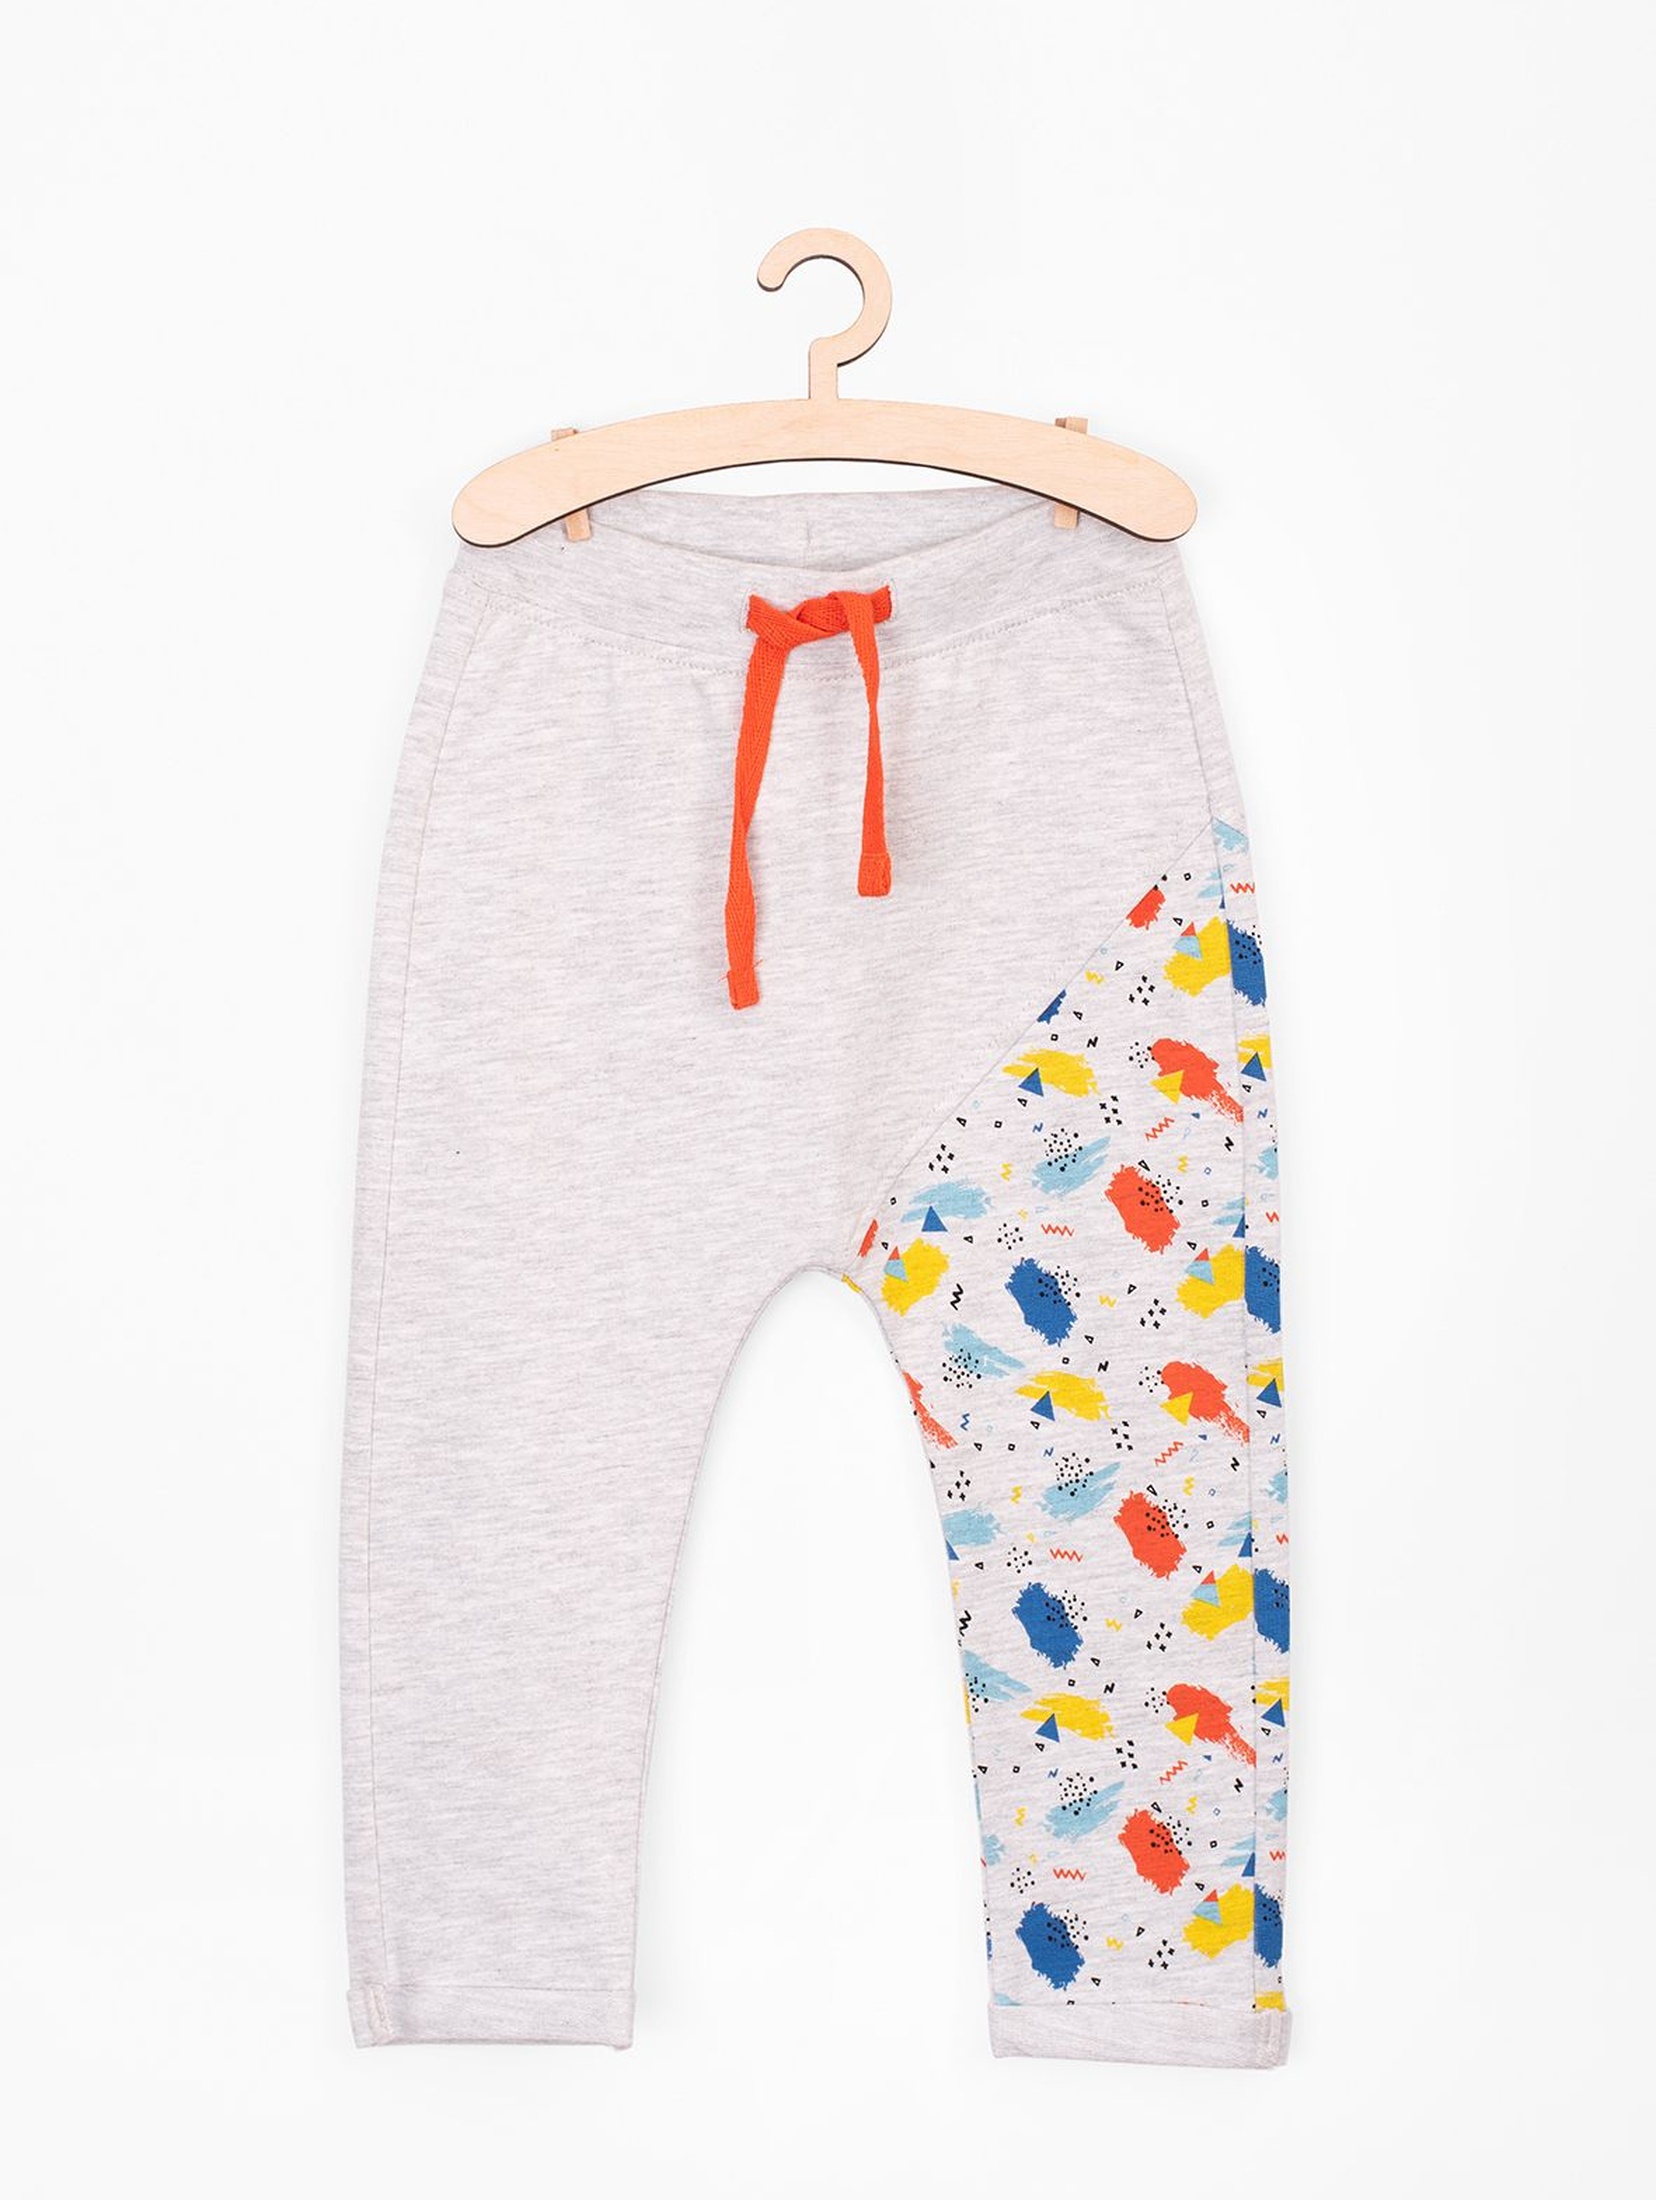 Spodnie dresowe dla niemowlaka-kolorowa nogawka